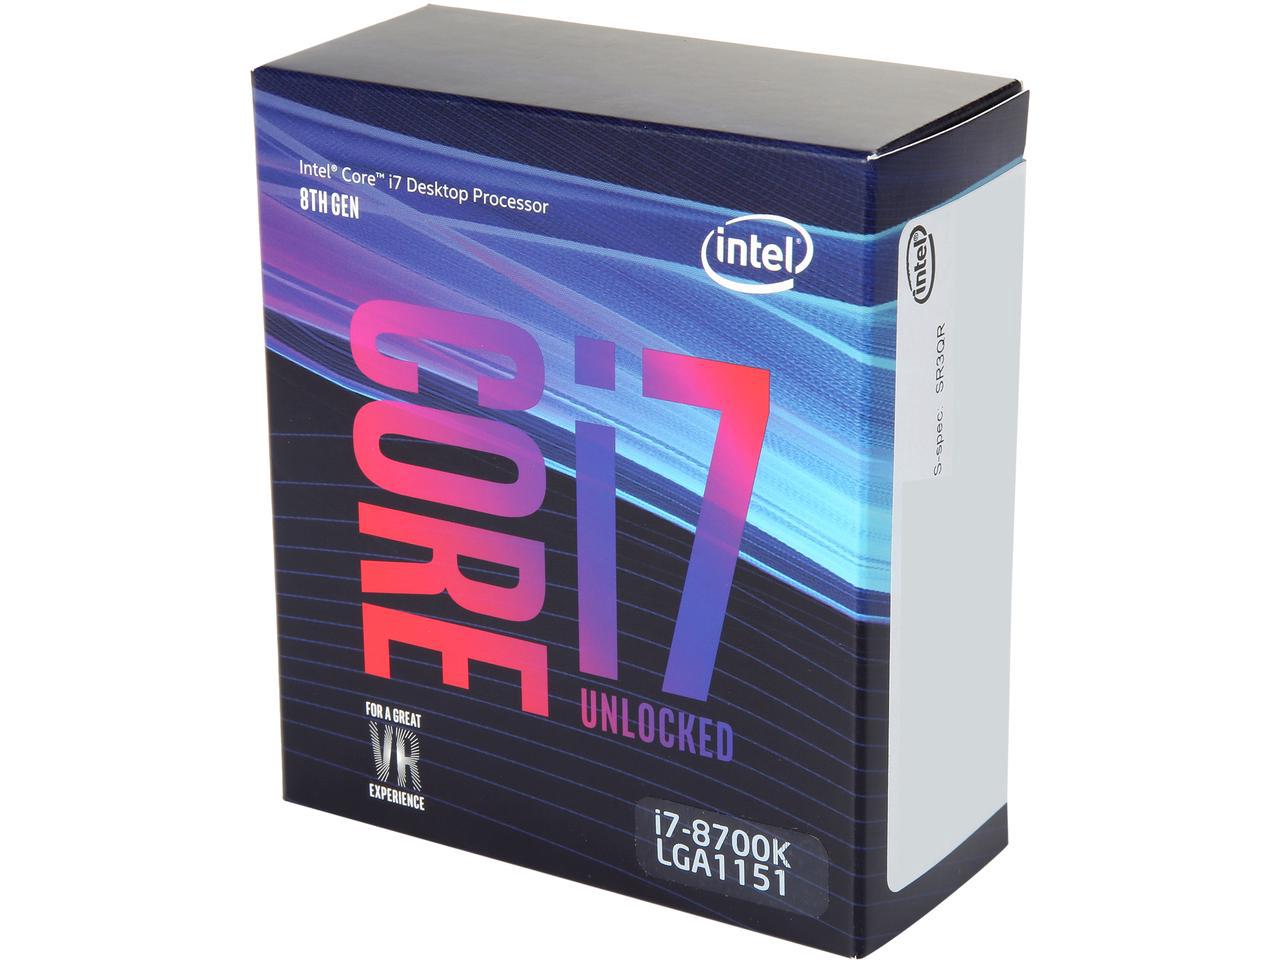 Bộ xử lý Intel® Core™ i7-8700K 12M bộ nhớ đệm, lên đến 4,70 GHz